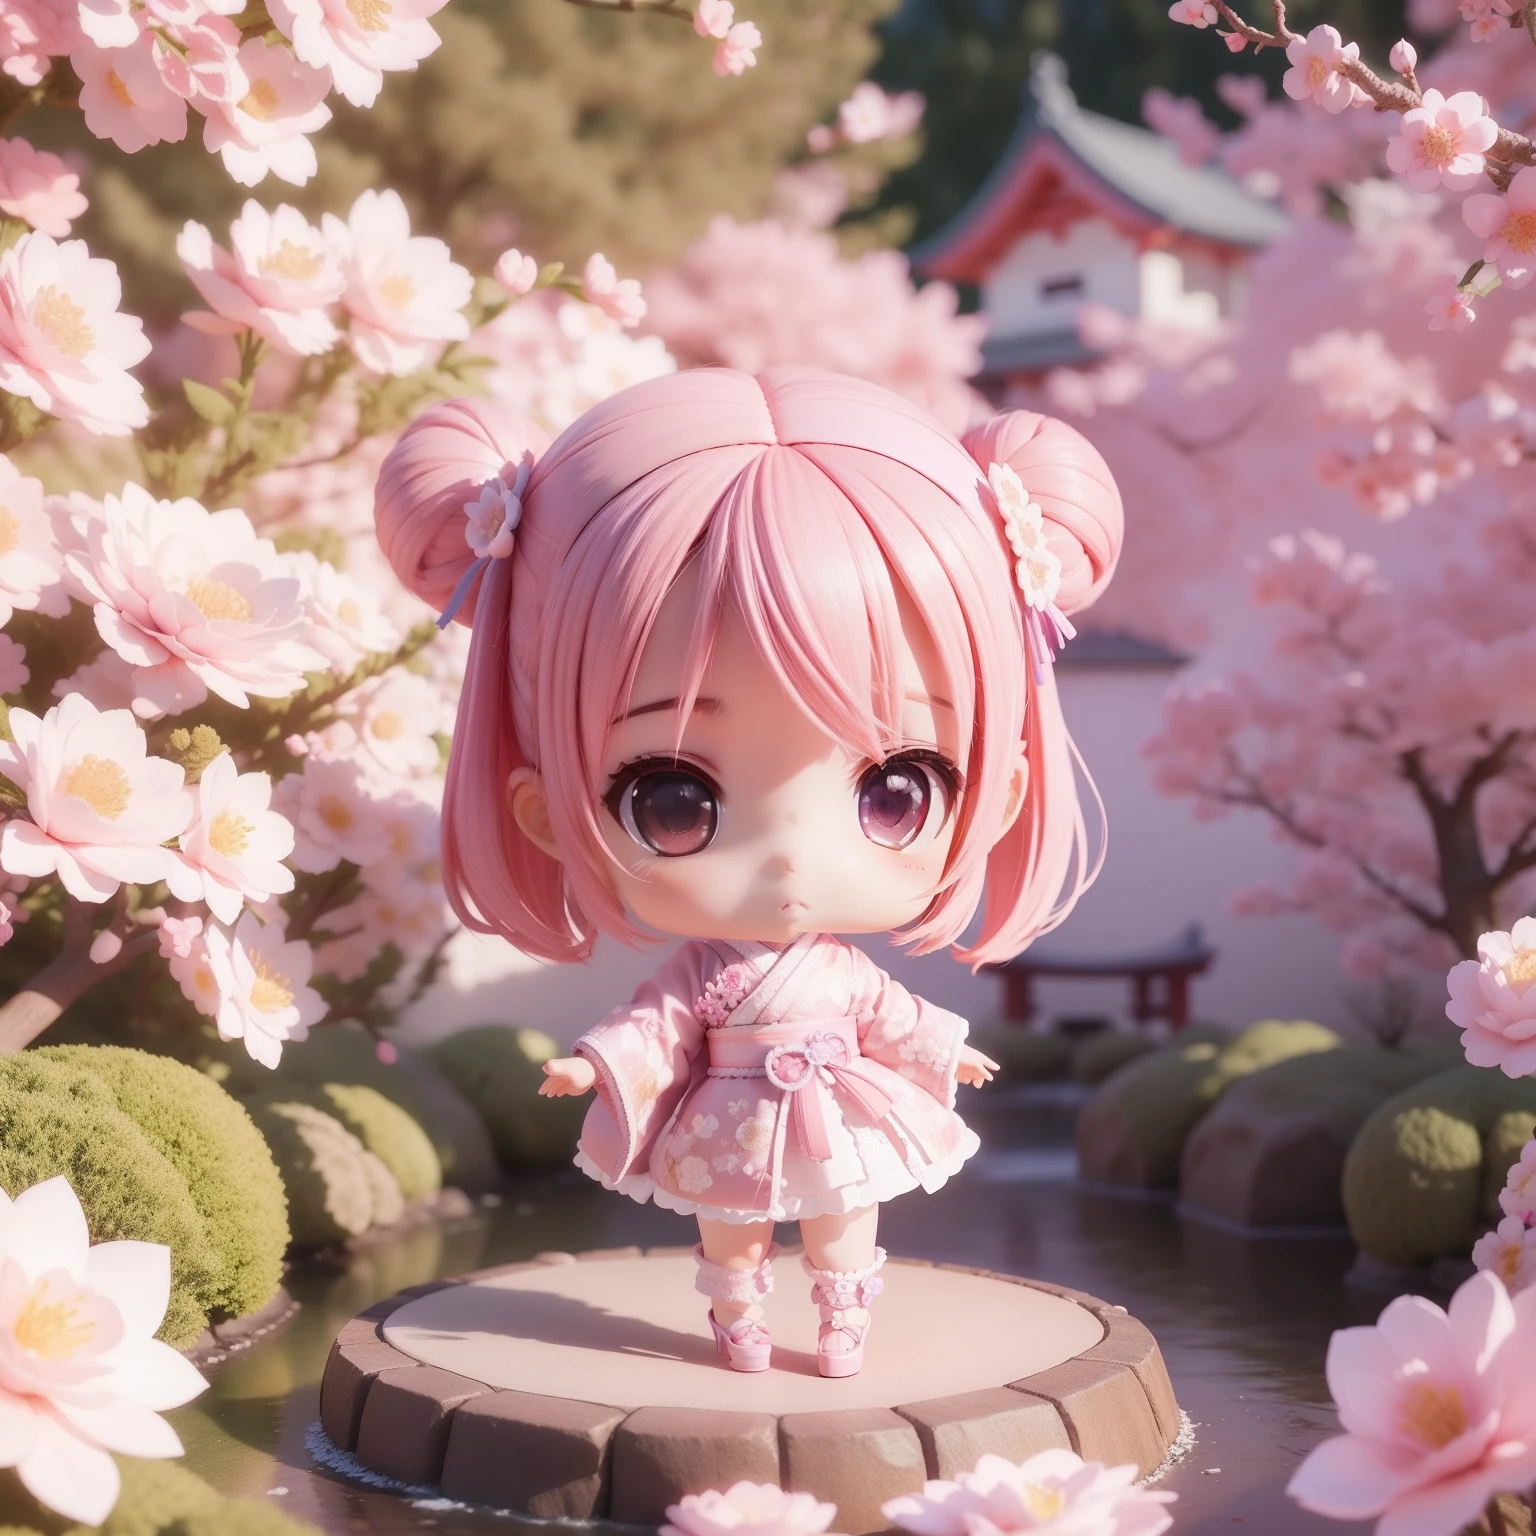 Lindo Bebé Chibi Anime,(((chibi 3d))) (mejor calidad) (Precio maestro)、Quimono rosa y morado、Tacones altos de encaje blanco con motivo floral de punto.、jardín japonés